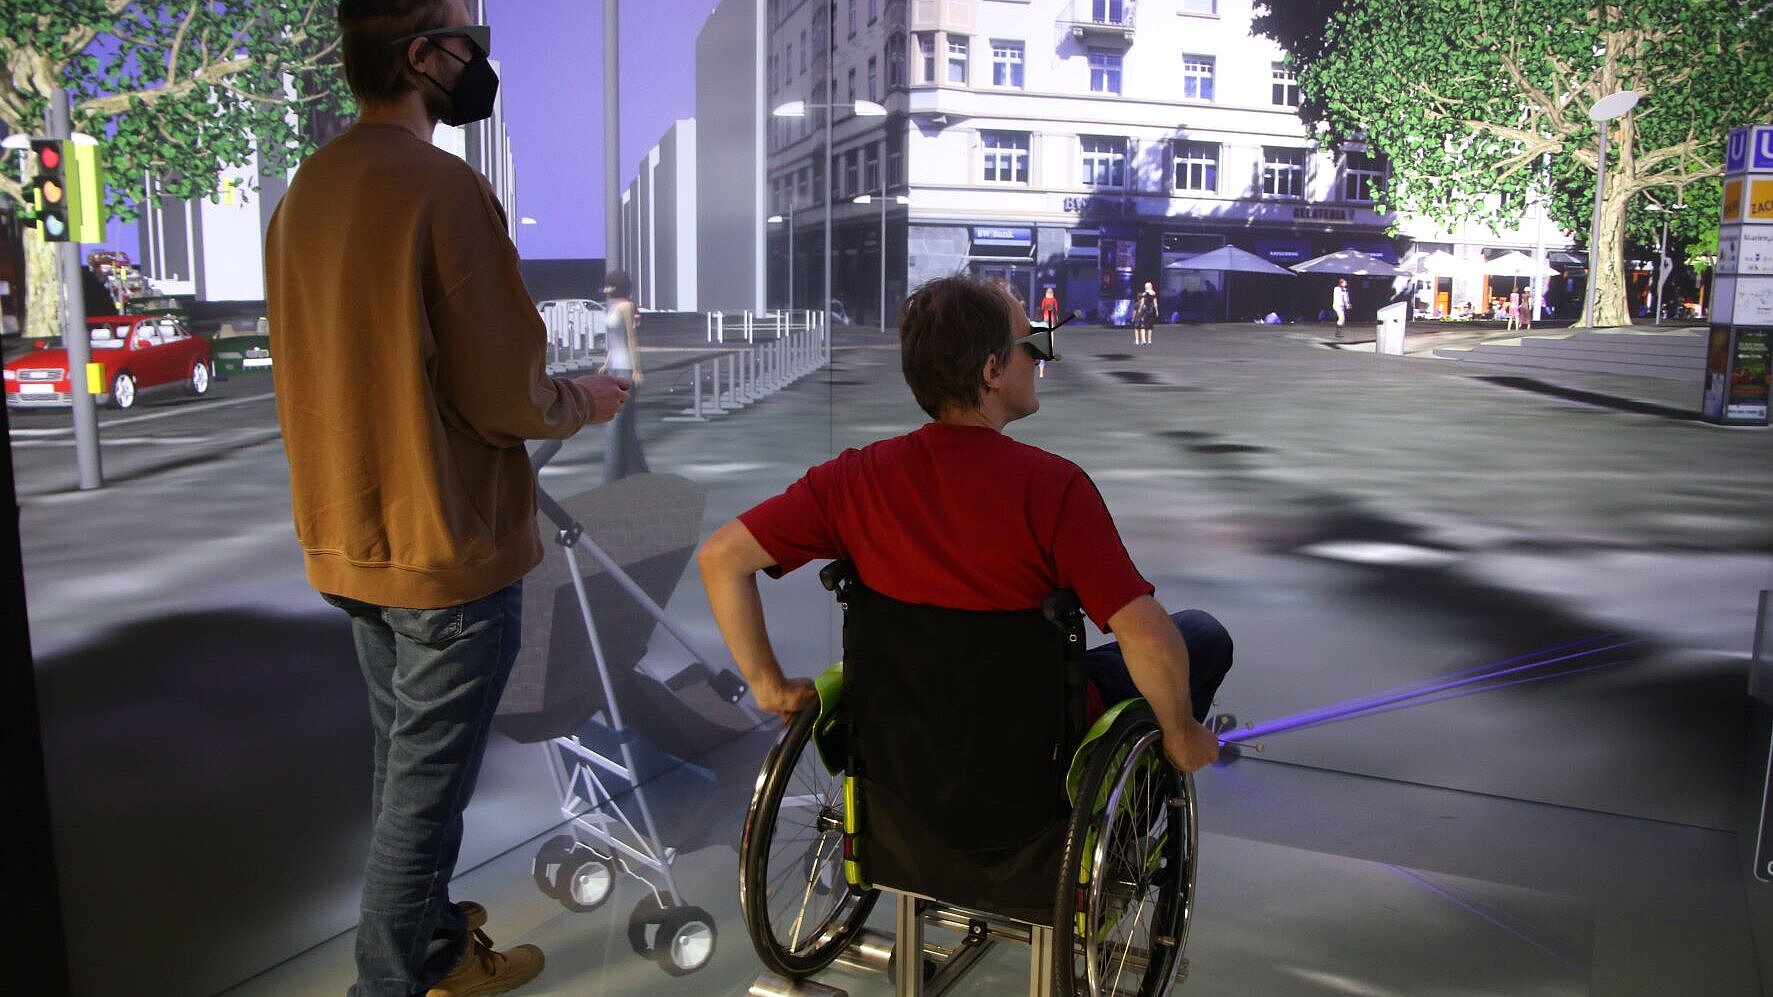 Foto aus der Visualisierungsanlage CAVE, das zwei Personen auf dem Marienplatz in Stuttgart zeigt. Eine Person davon steht, die andere sitzt im Rollstuhl.